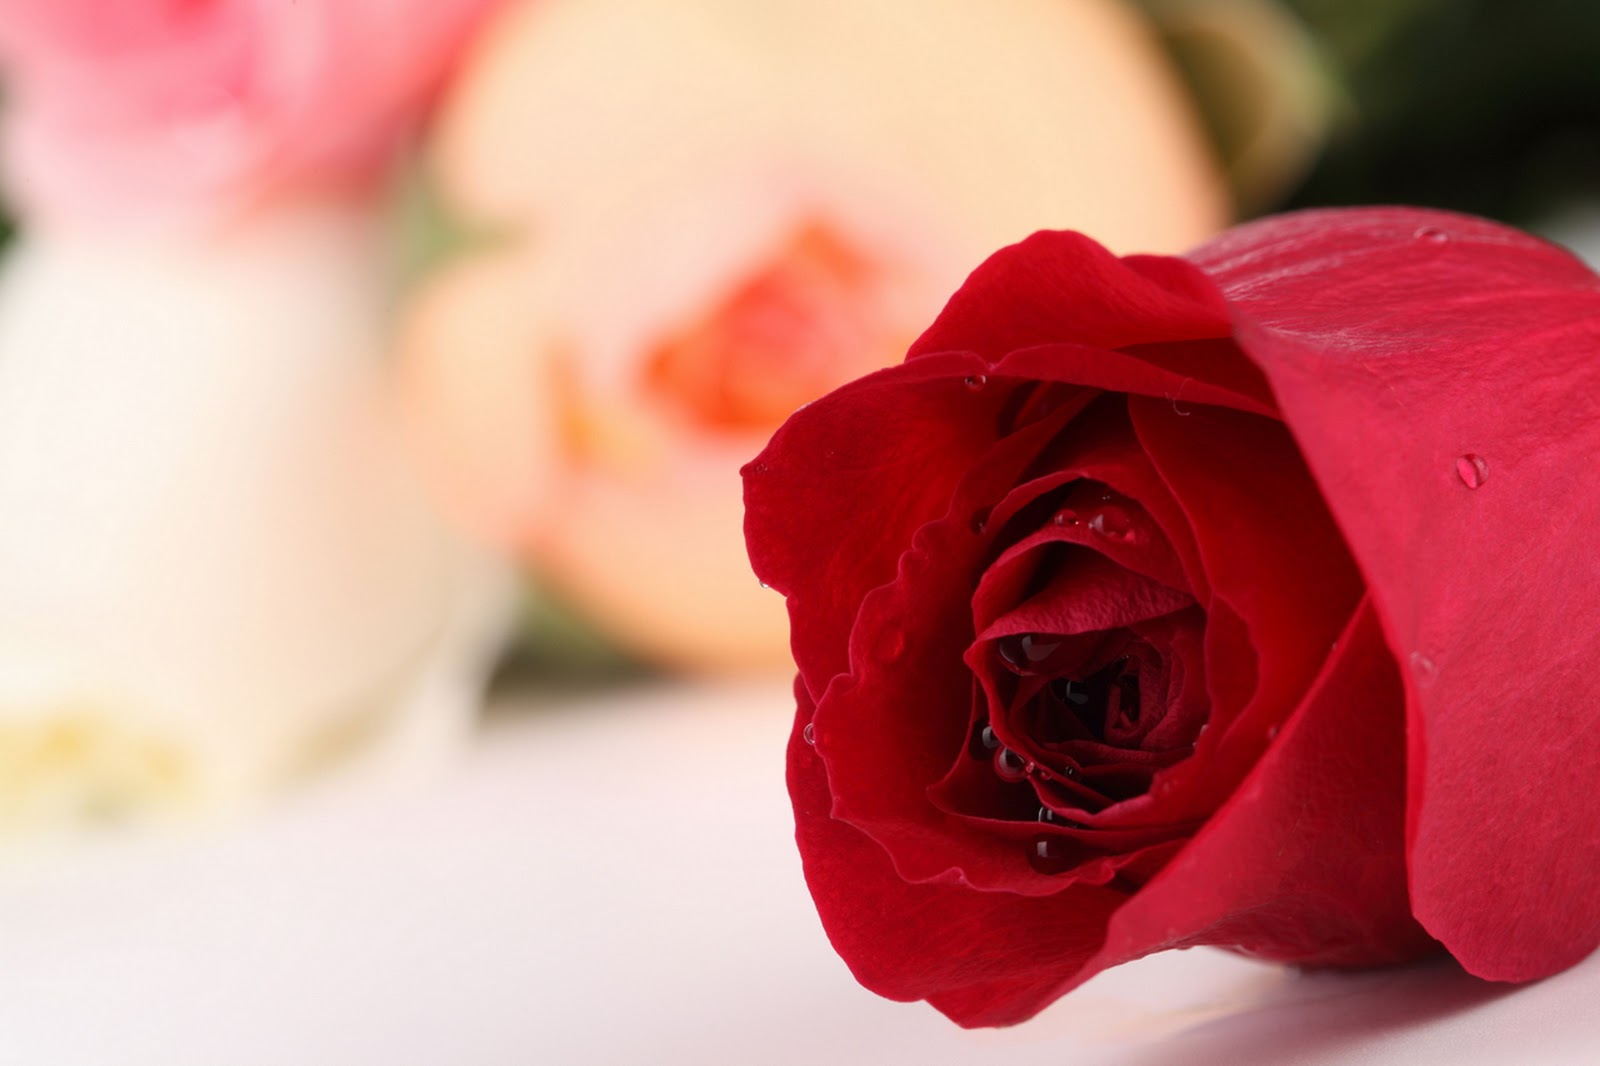  Gambar  Bunga  Mawar  yang Cantik Cantik